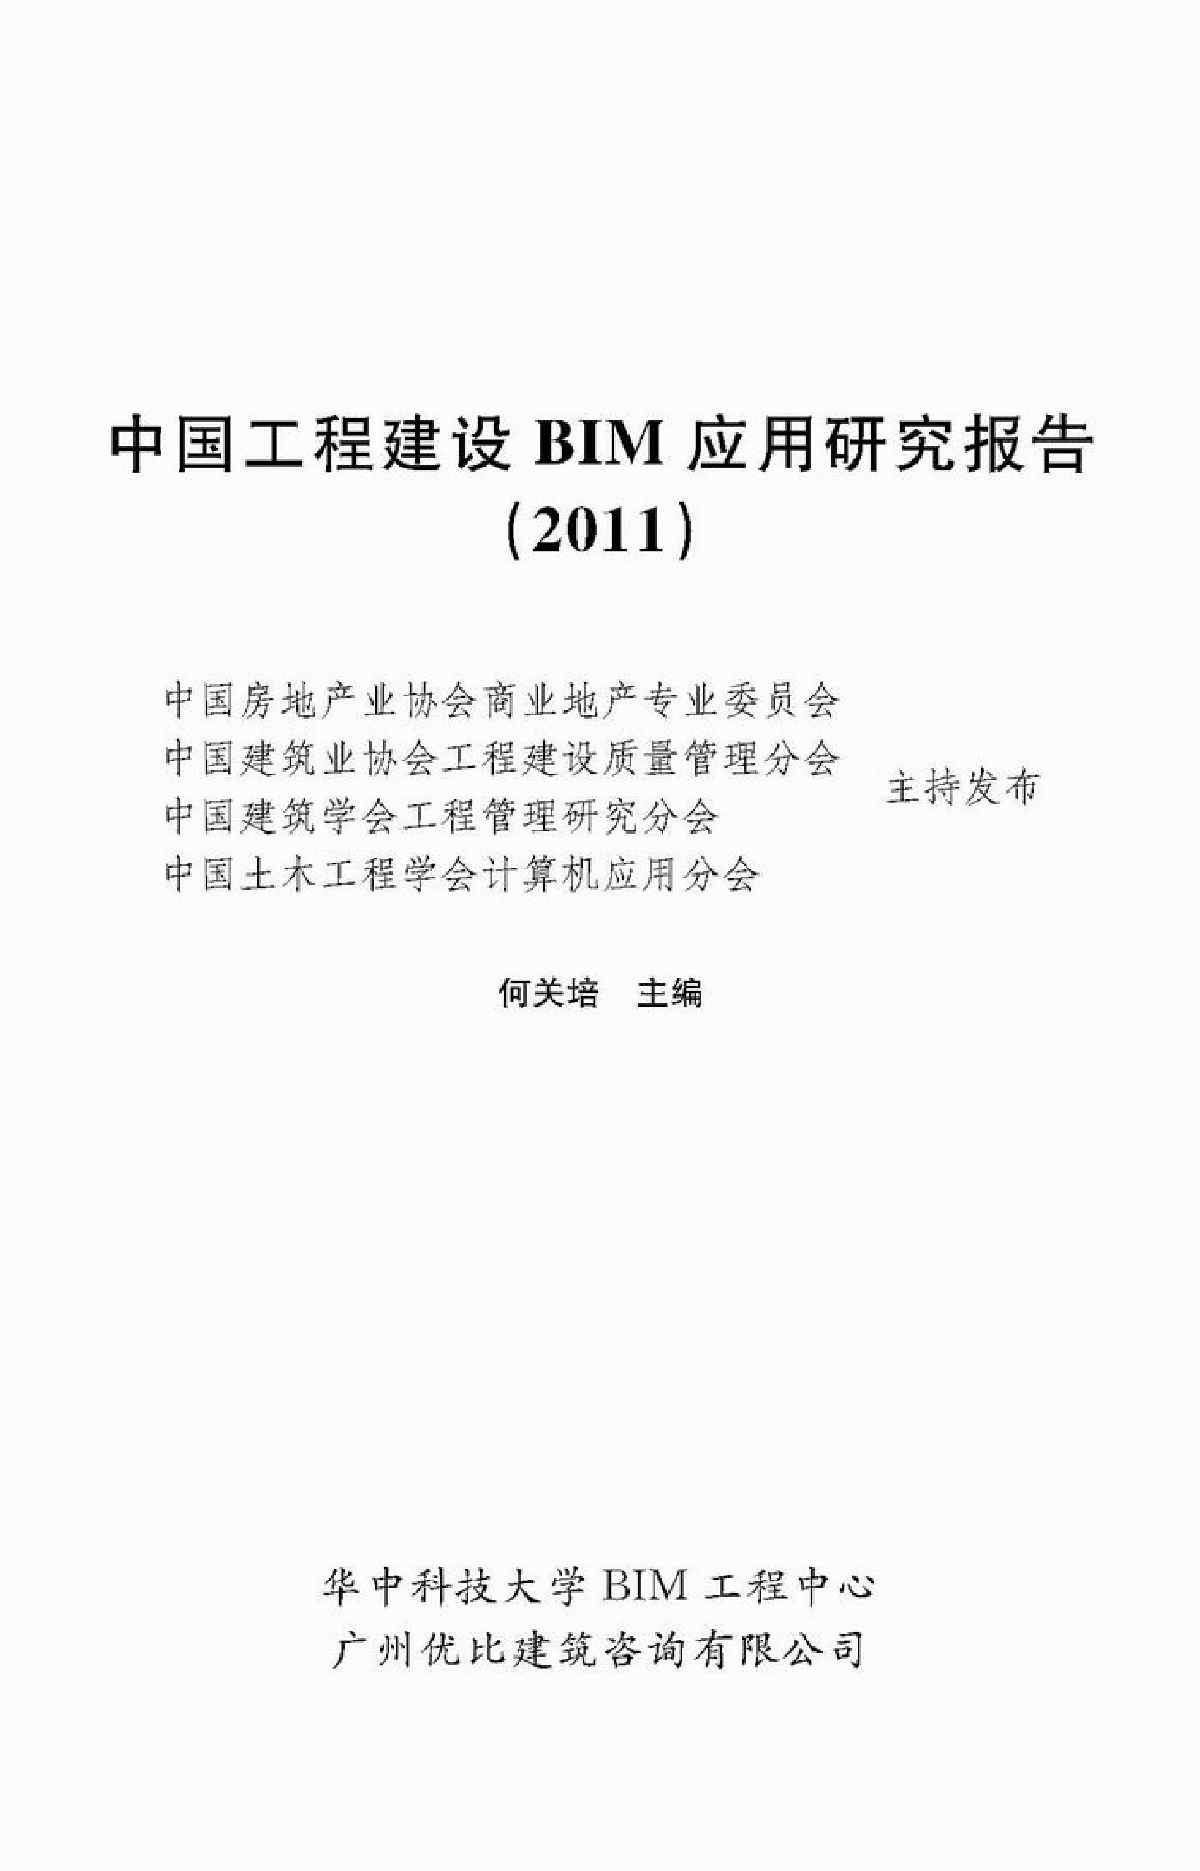 中国工程建设BIM应用研究报告